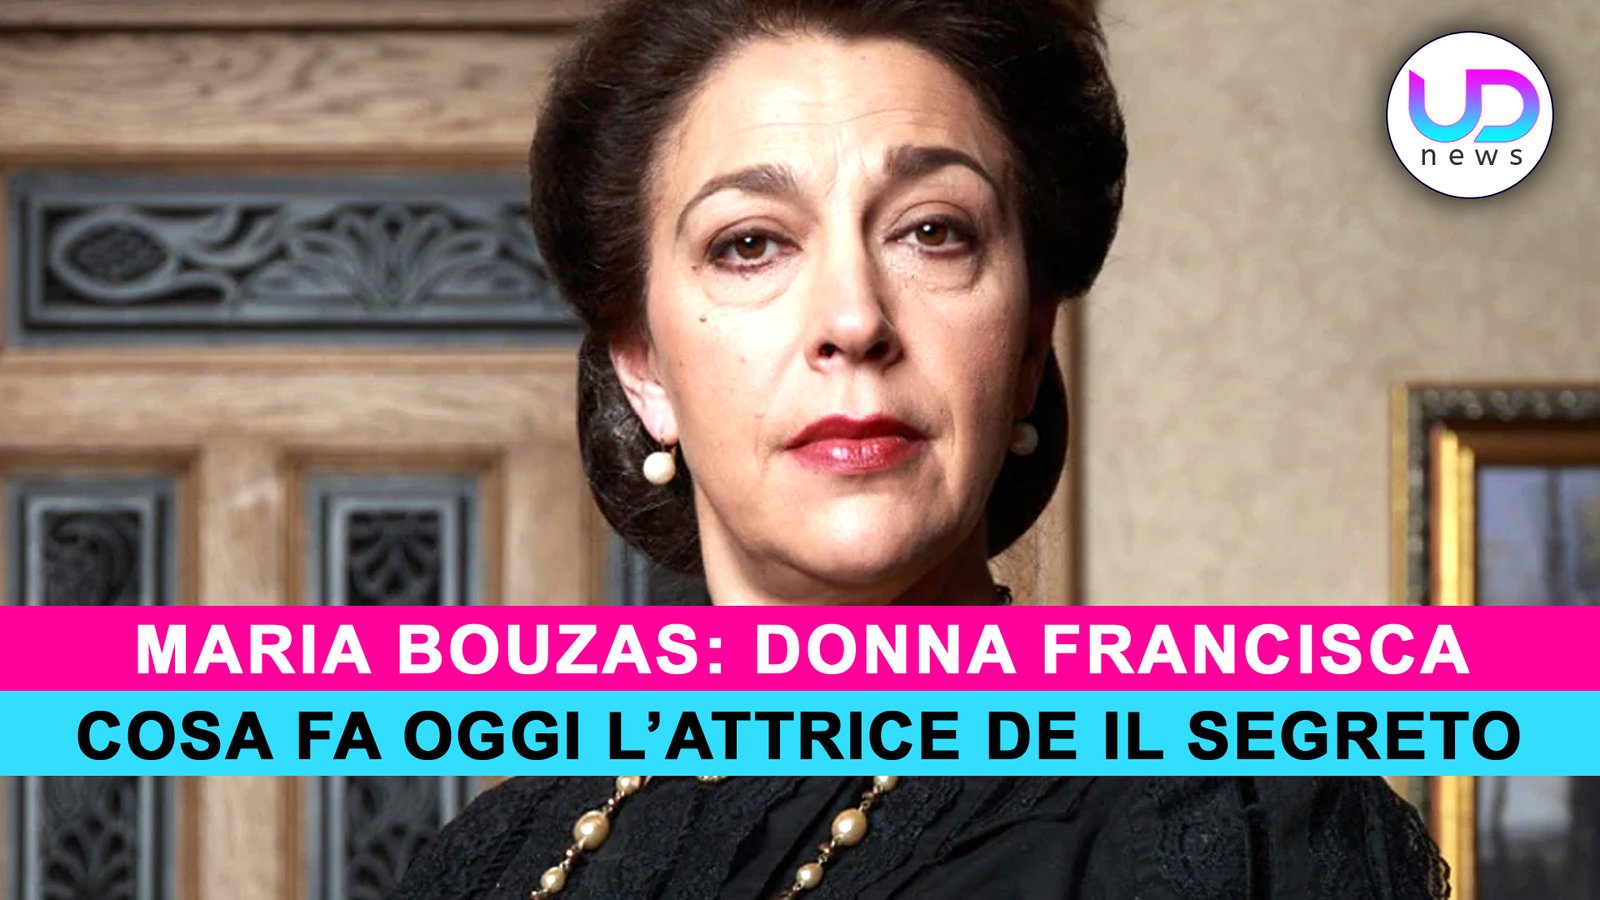 maria-bouzas:-cosa-fa-oggi-donna-francisca-de-il-segreto!-–-ud-news